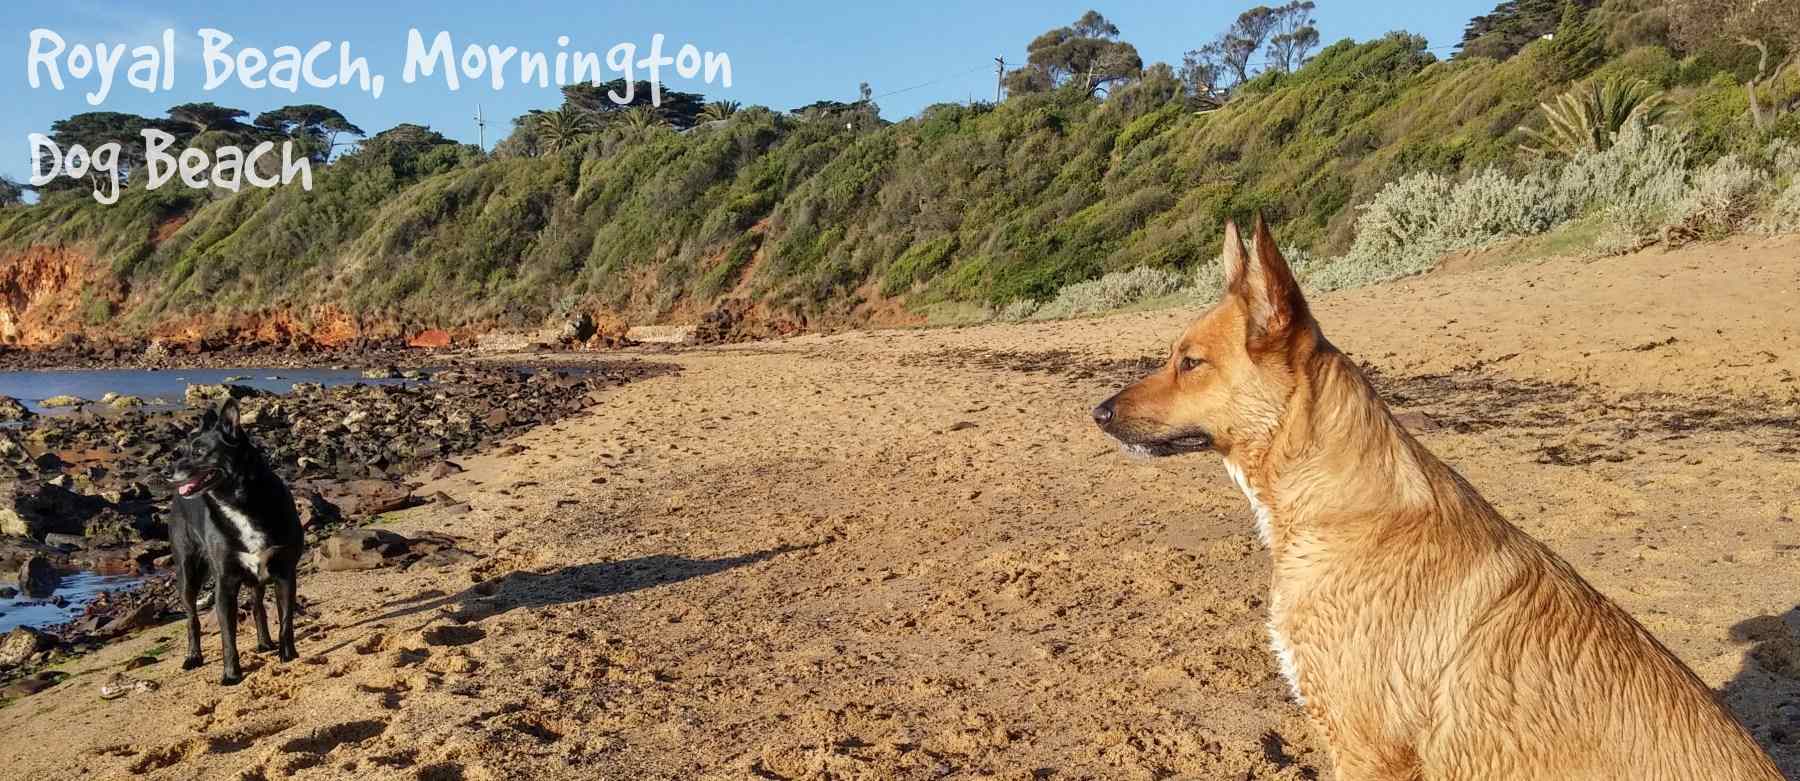 Royal Beach, Mornington - Dog Beach